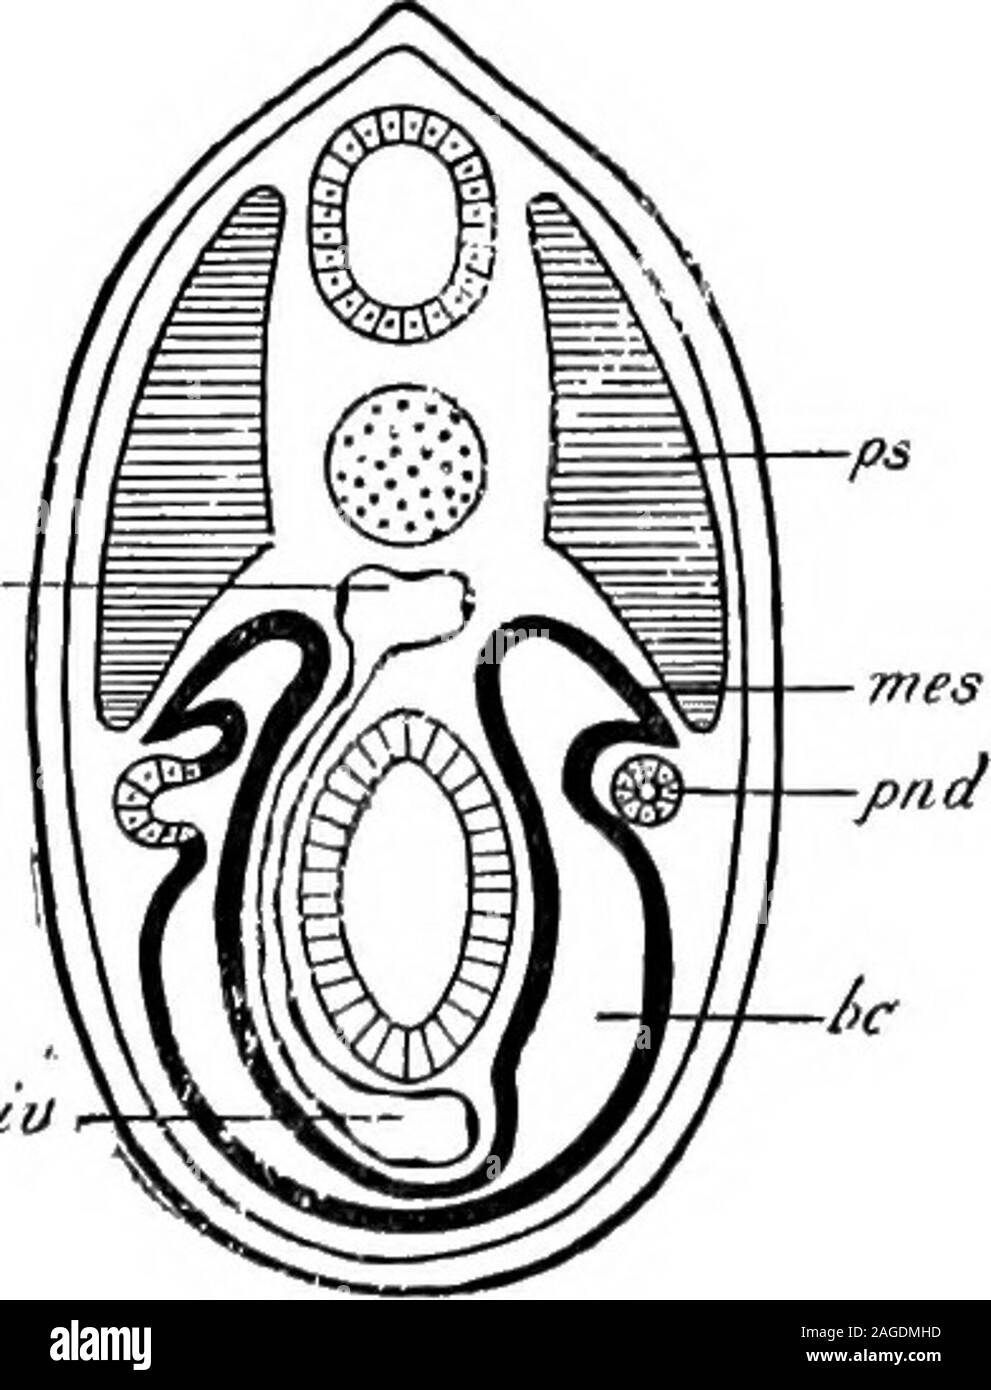 . Grundzüge der Zoologie. In einer späteren Periode in jene Arten inwhich der pronephros ist ein functionallarval Orgel, aber viel in thehigher Wirbeltiere früher, andere seriesof Tubuli differenziert ist von themesoblast, und einen Zusammenhang mit der segmentalen Leitung, stellt der Mesonephros, oder mid-Niere. Die Tubuli entstehen in der Regel, jedoch nicht immer, näher theposterior Ende des Körpers als thepronephros, und es bilden sich ausder Teil des Mesoblasten whichconnects der Muskel Segment unddie seitliche Platte (siehe Abb. 270). Unterhalb der Amniota Die mesonephrosforms der ständigen excretoryorgan. Stockfoto